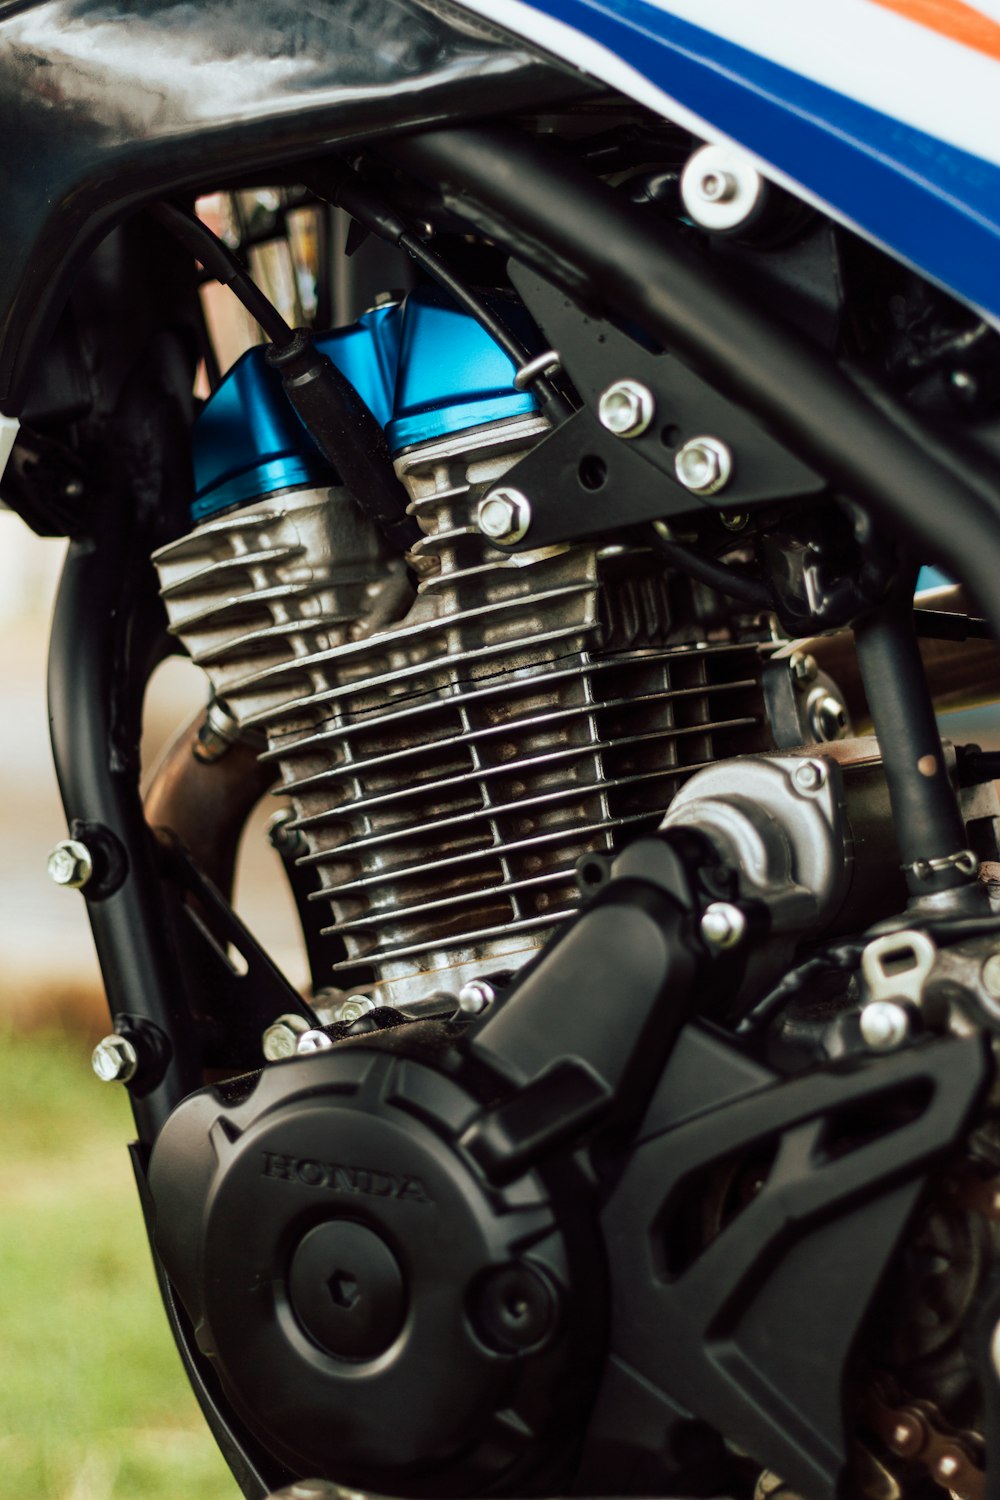 black motorcycle engine during daytime